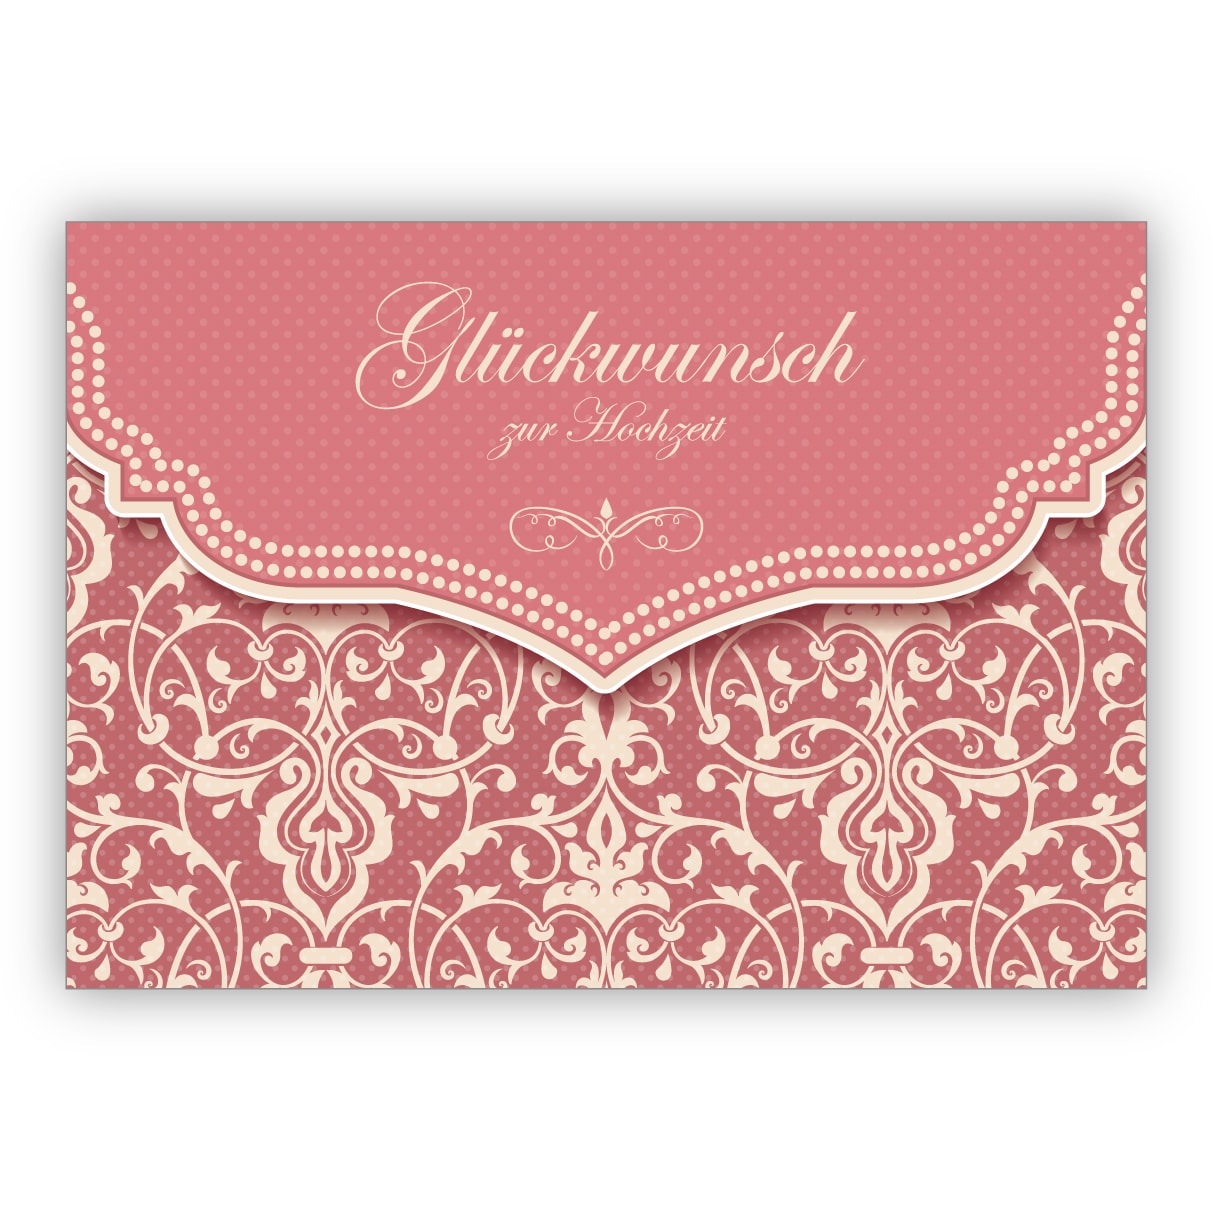 Feine Vintage Hochzeitskarte mit Retro Damast Muster in zartem rosa: Glückwunsch zur Hochzeit